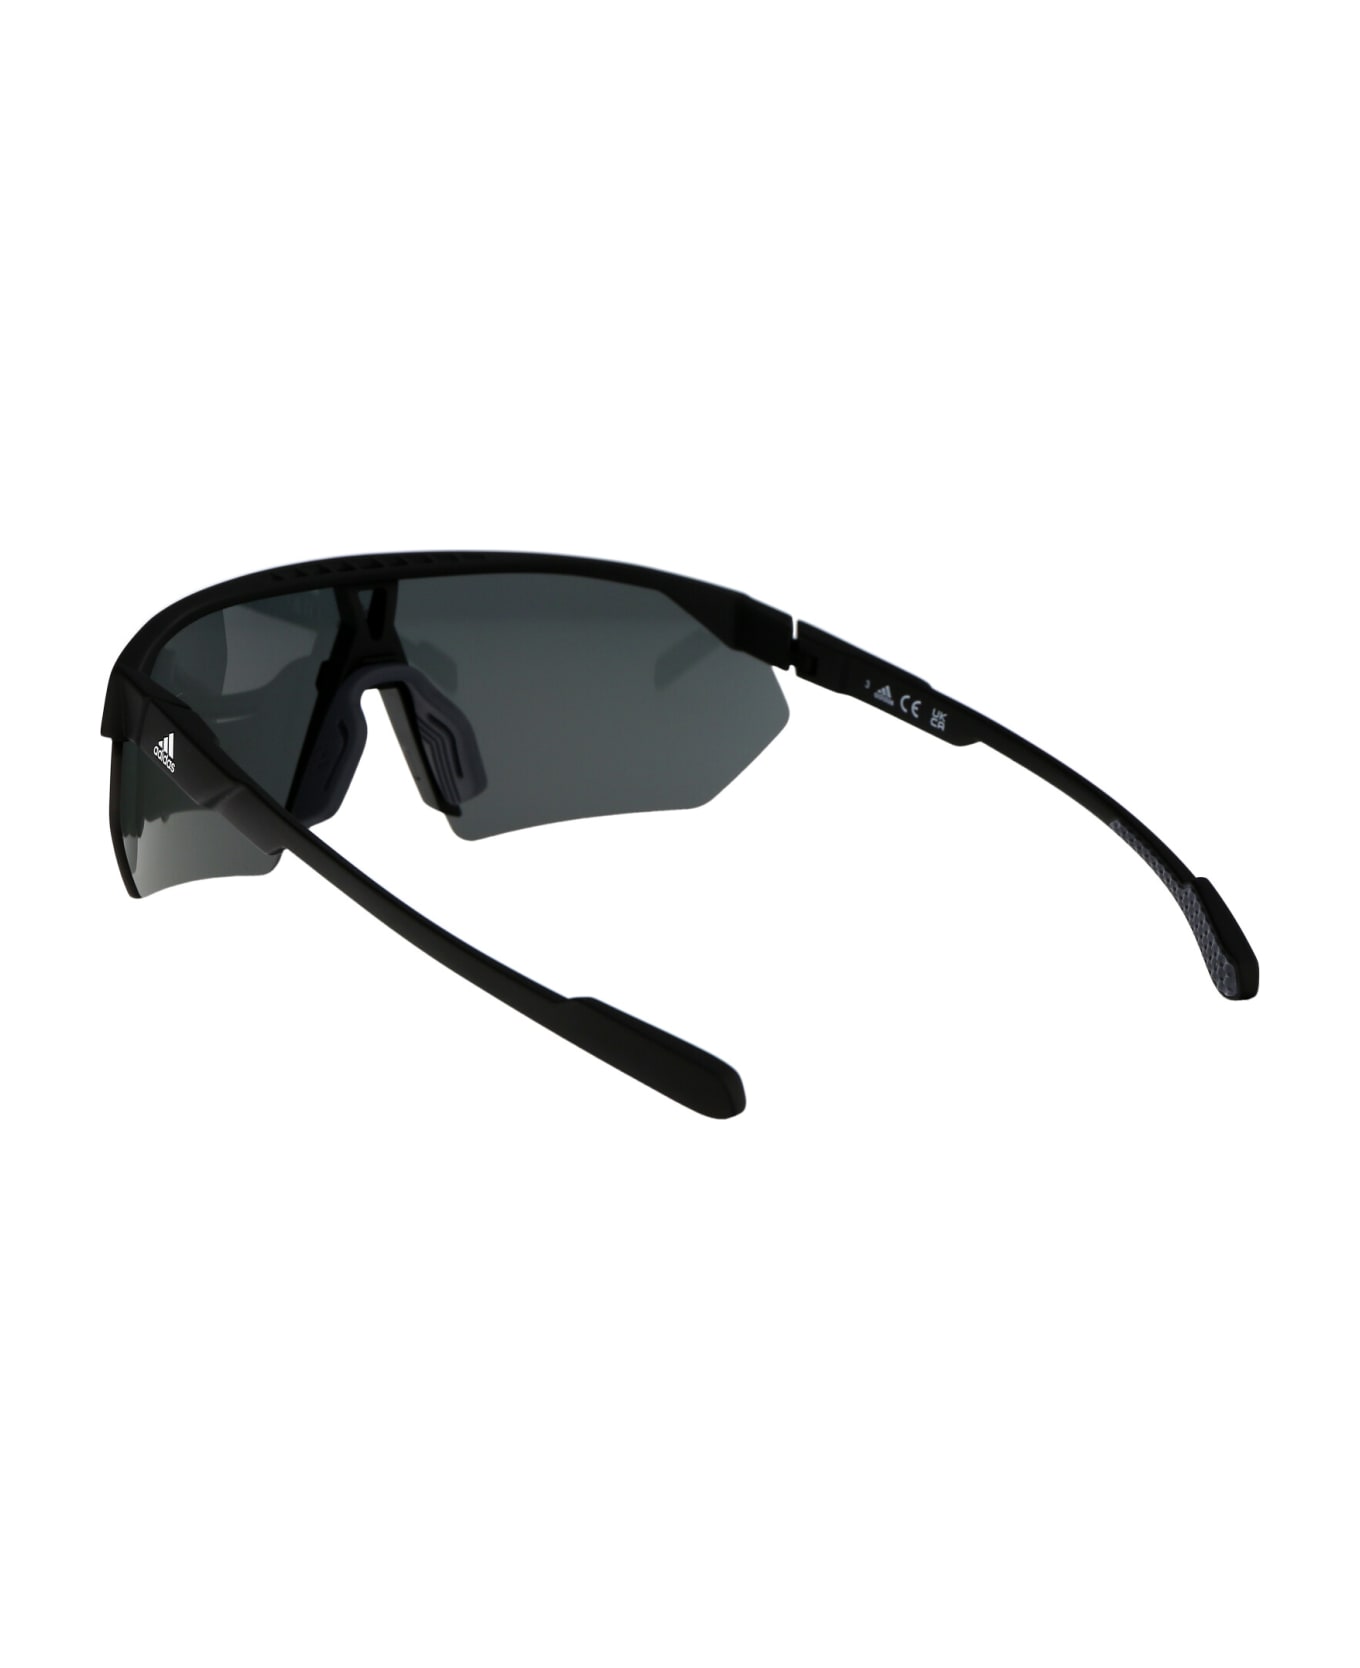 Adidas Prfm Shield Sunglasses - 02A Nero Opaco/Fumo